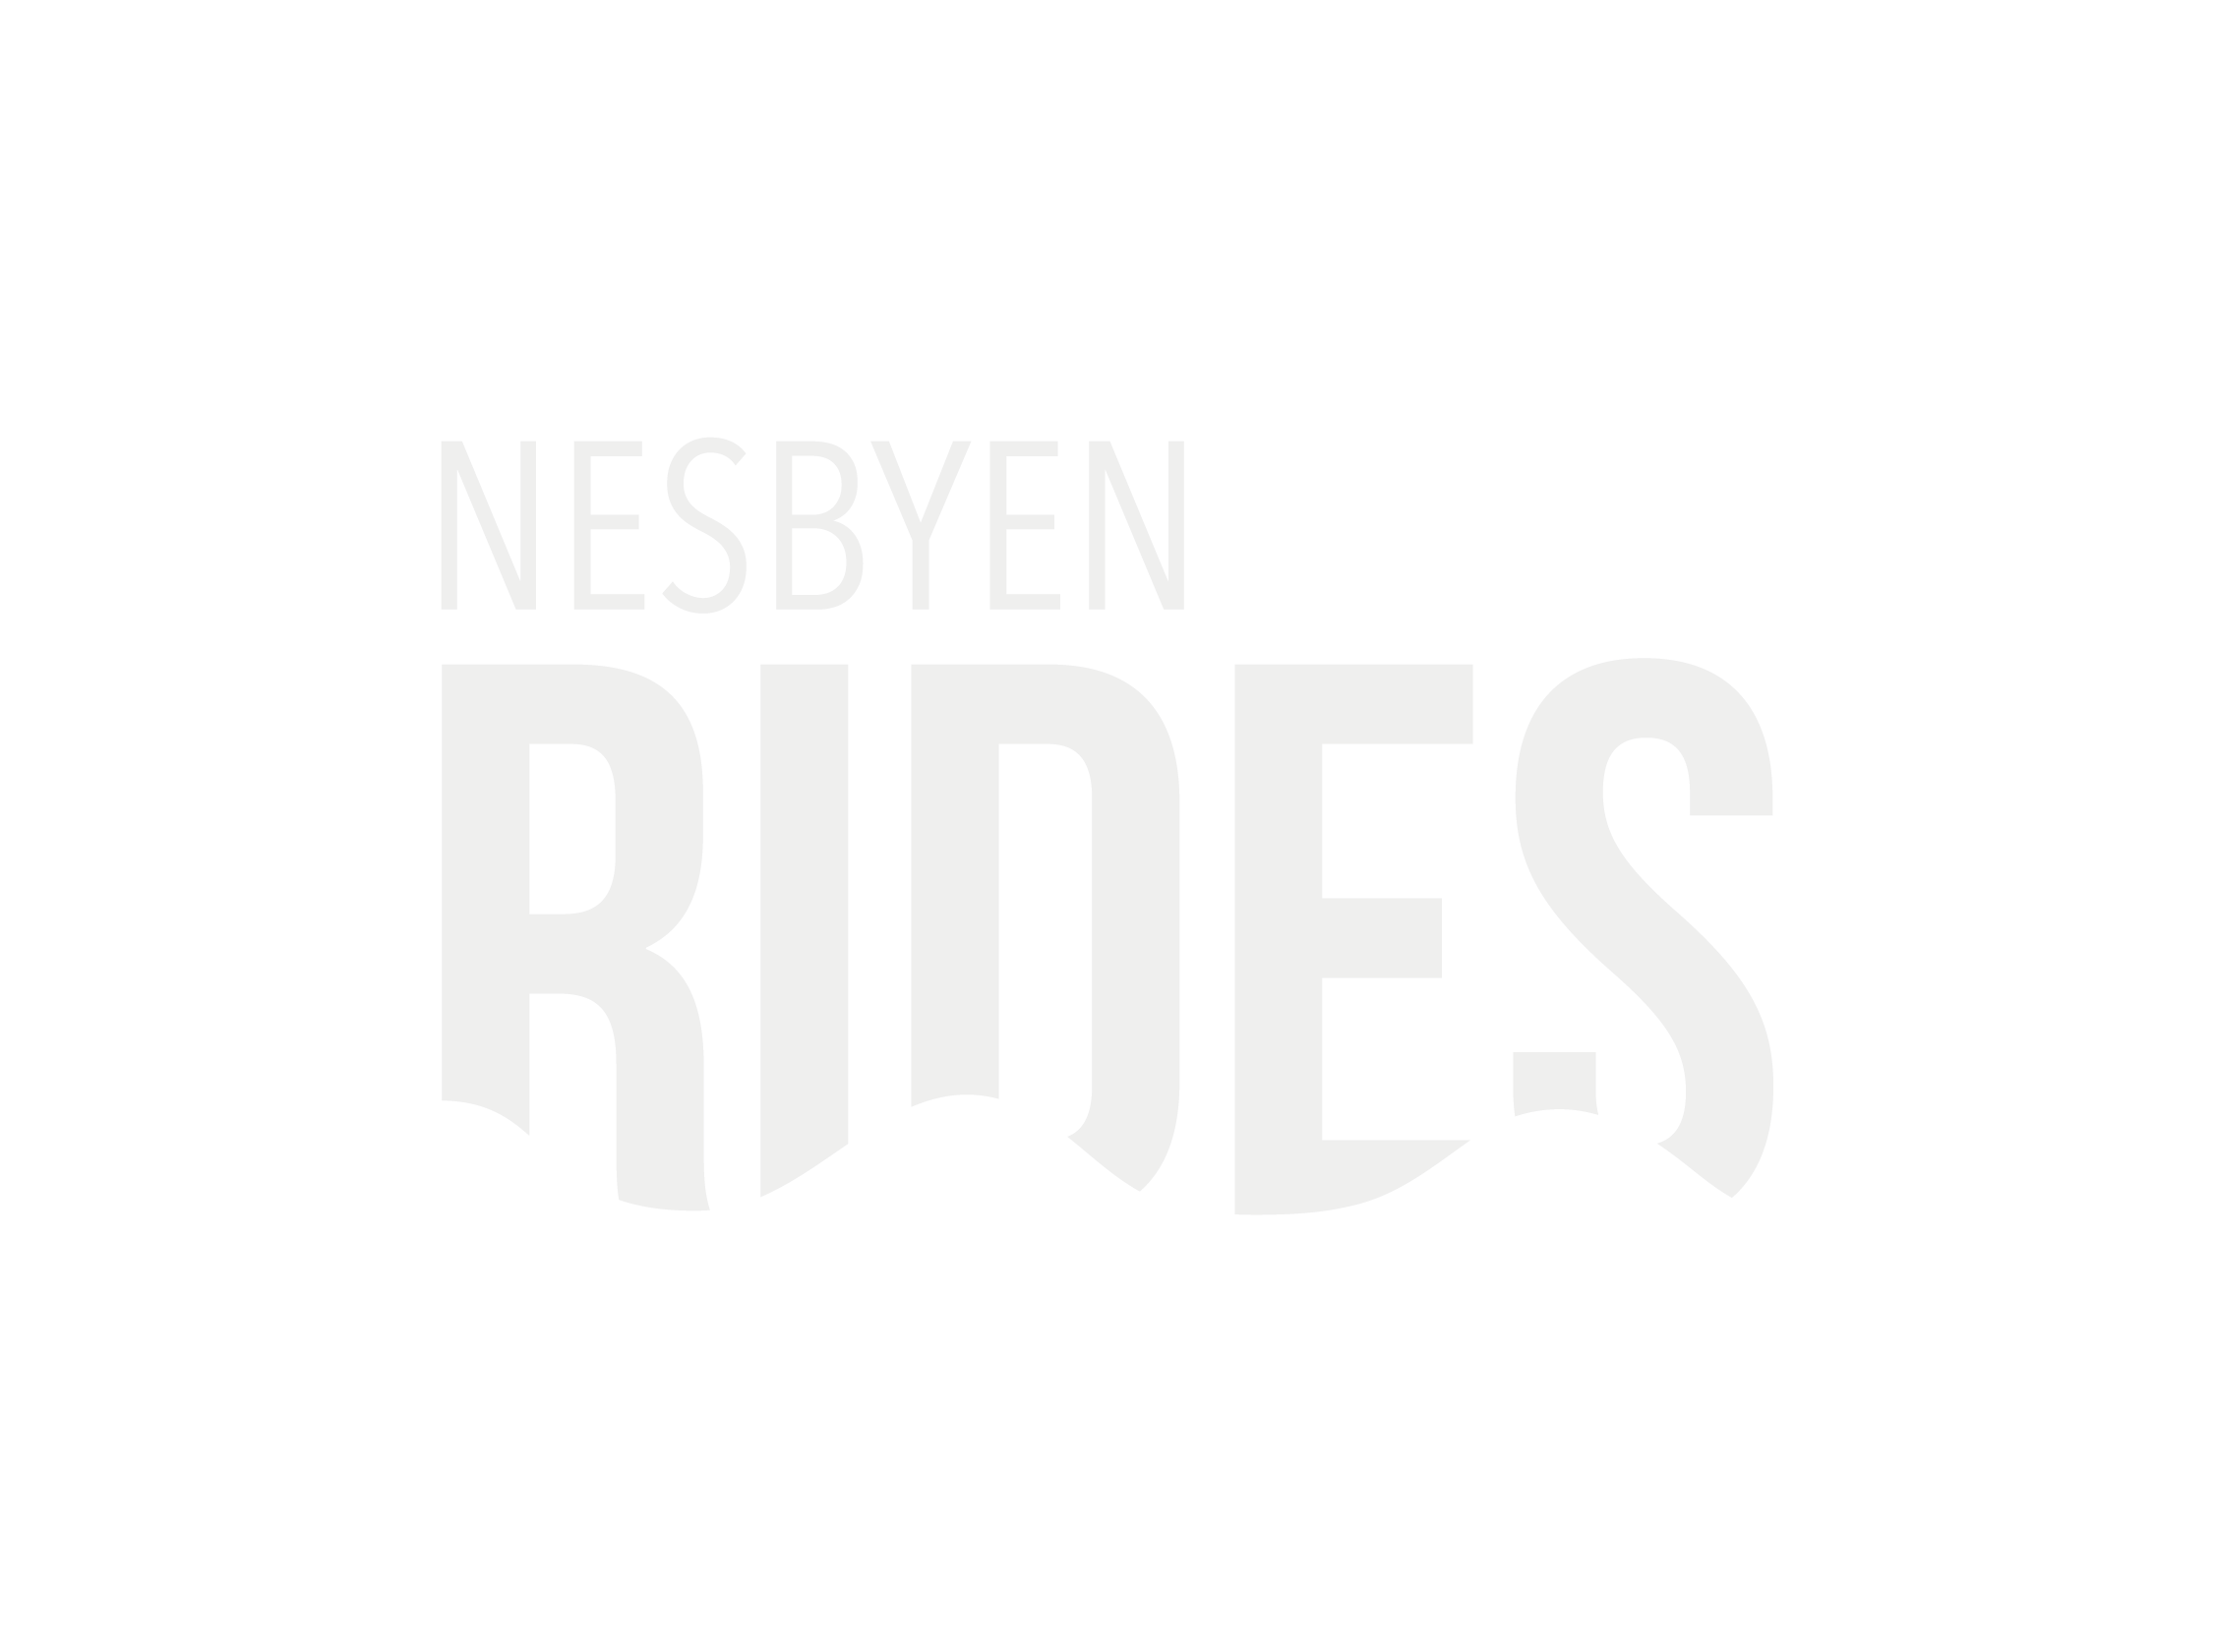 Nesbyen Rides HVIT.png